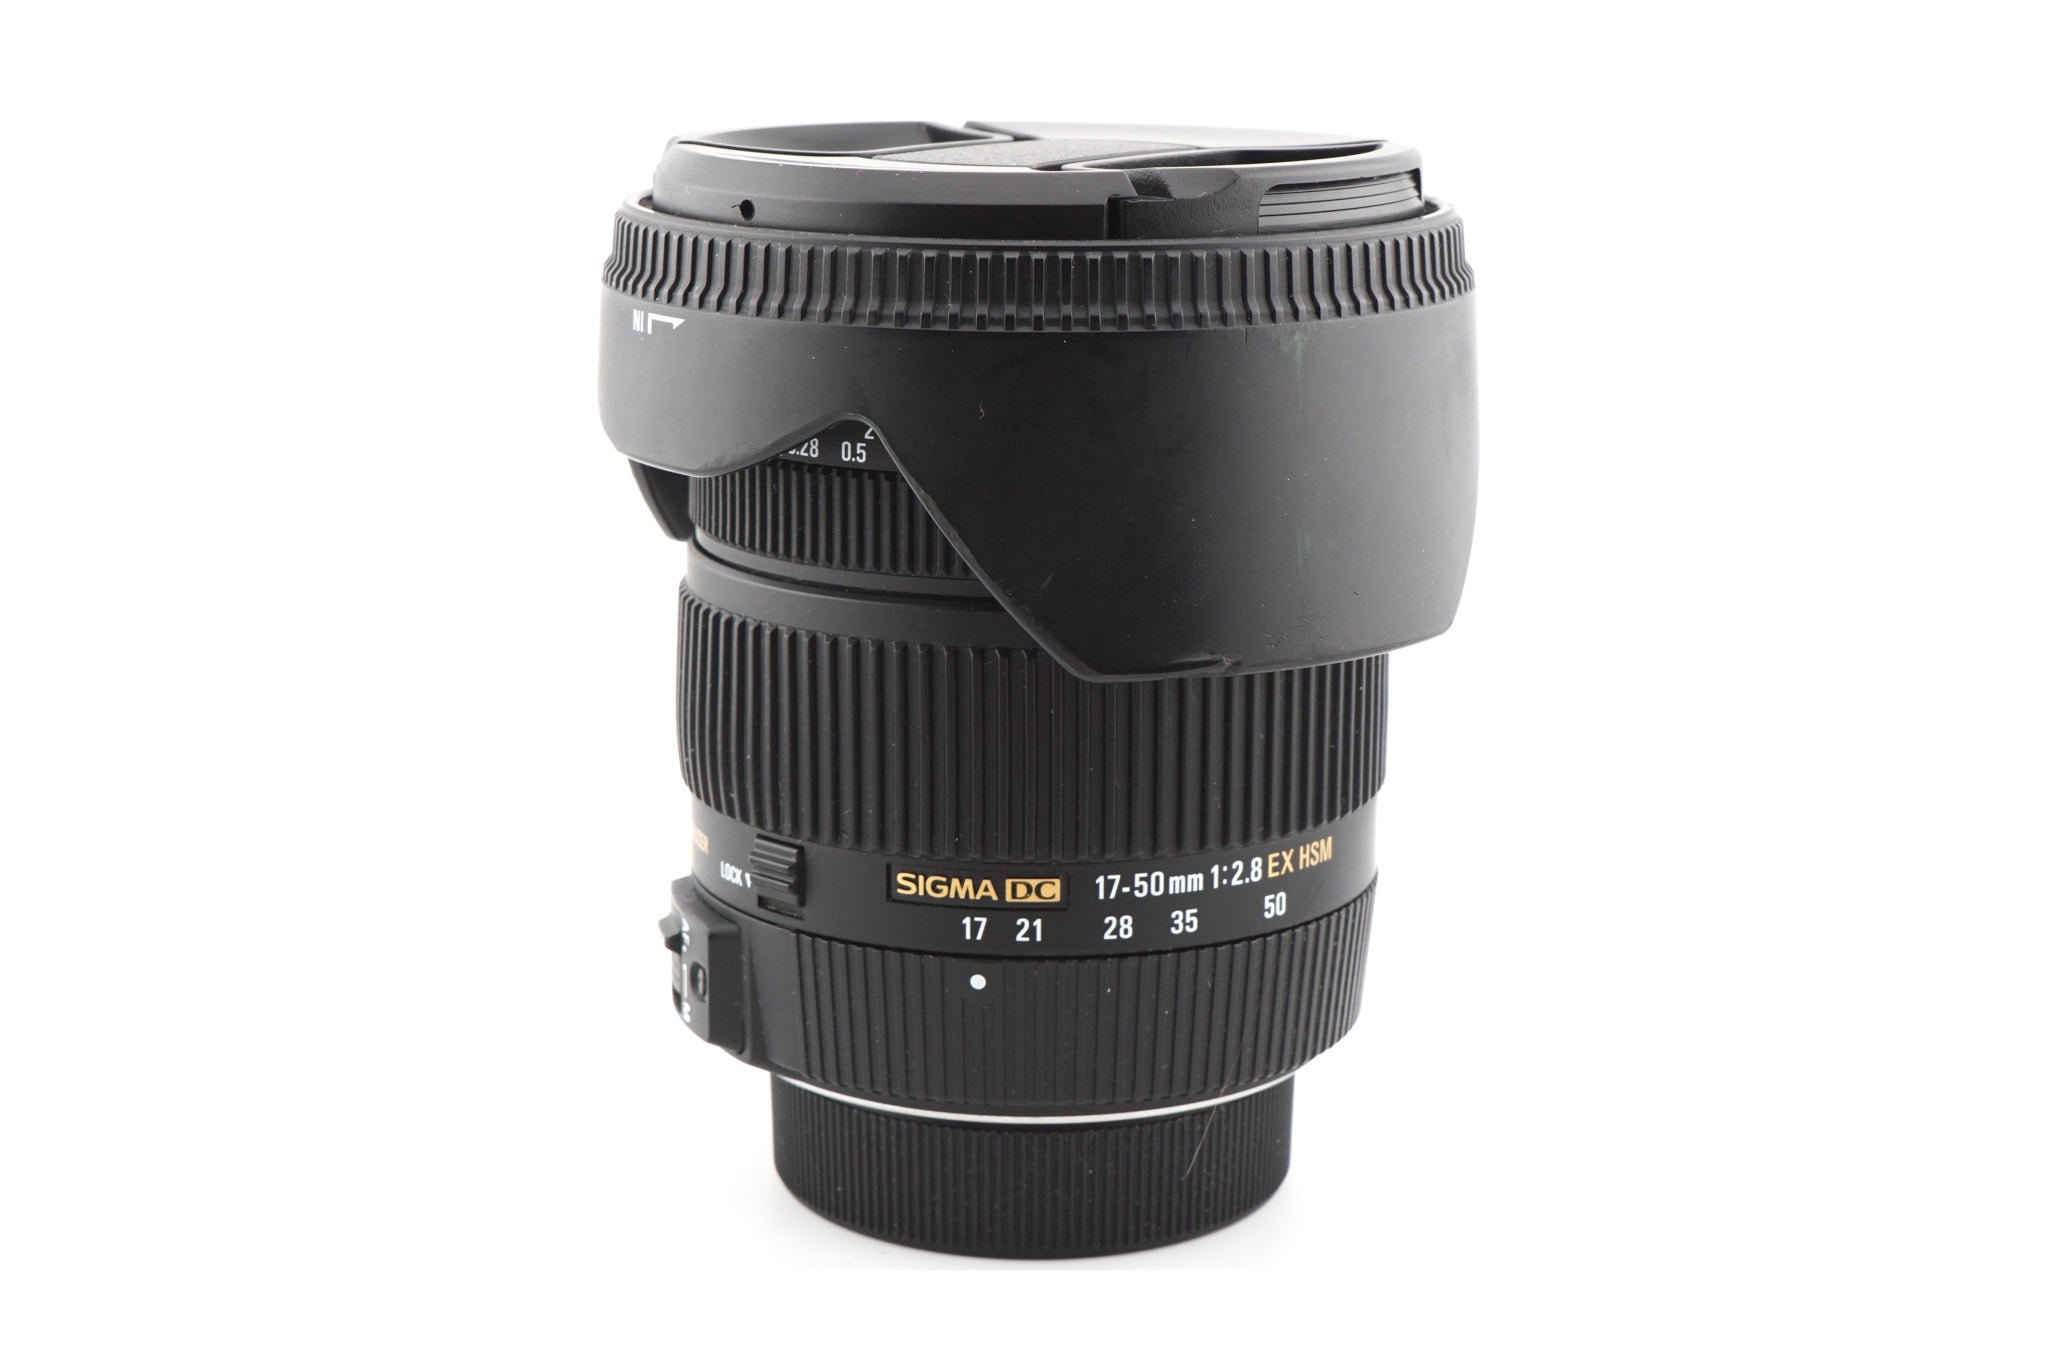 Sigma 17-50mm f2.8 EX DC OS HSM - Lens